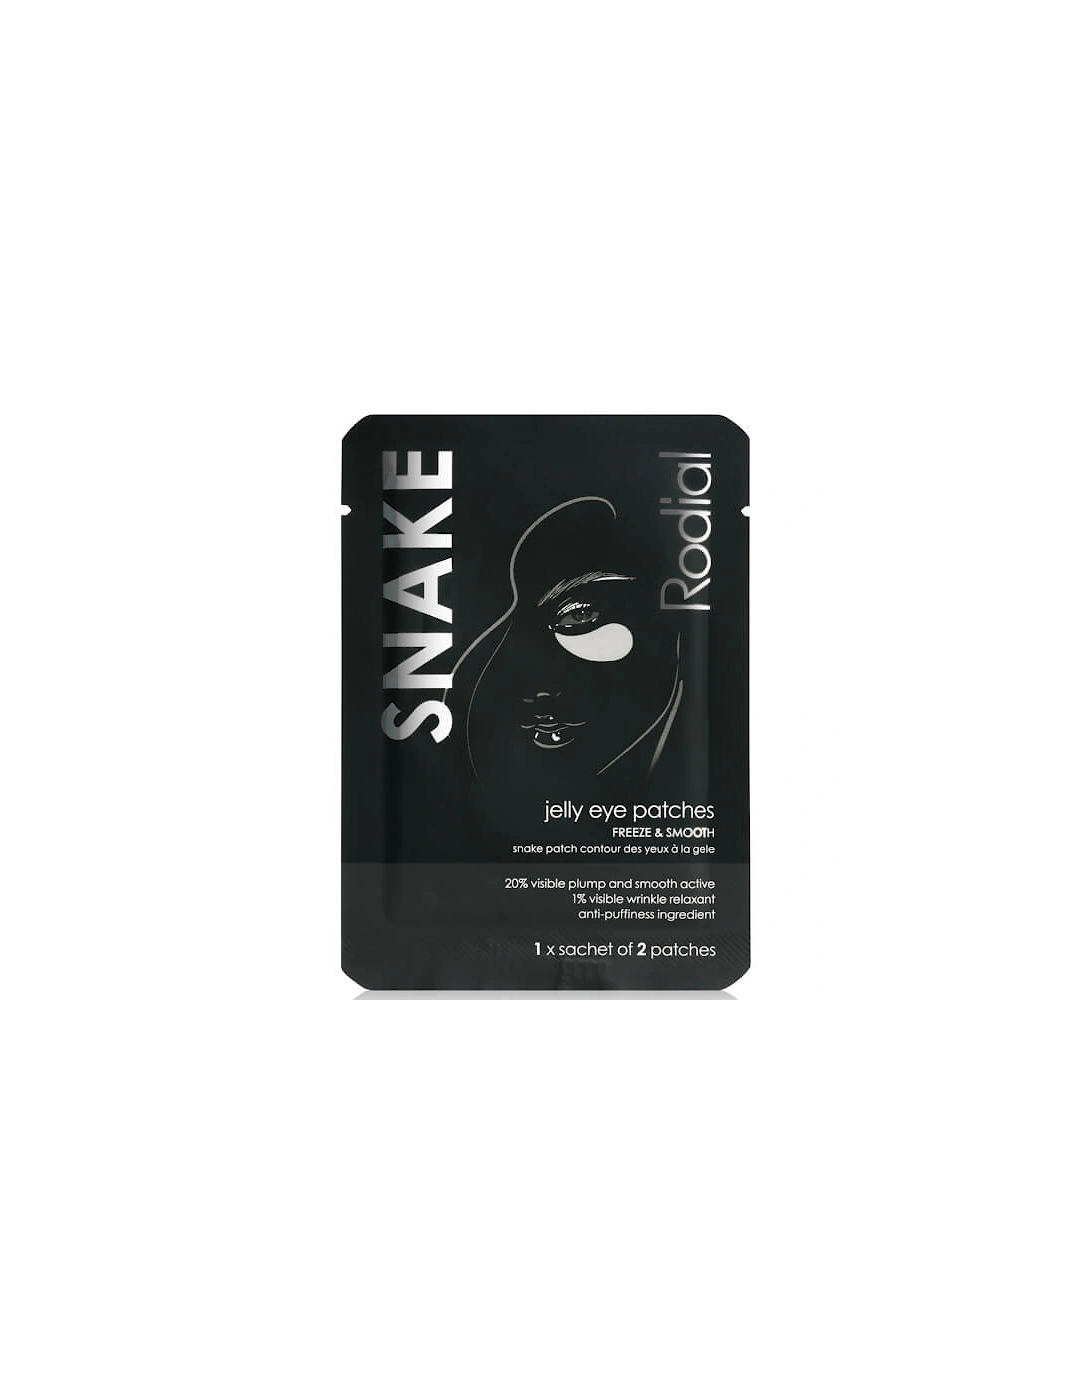 Snake Jelly Eye Patches - Single Sachet - Rodial, 2 of 1